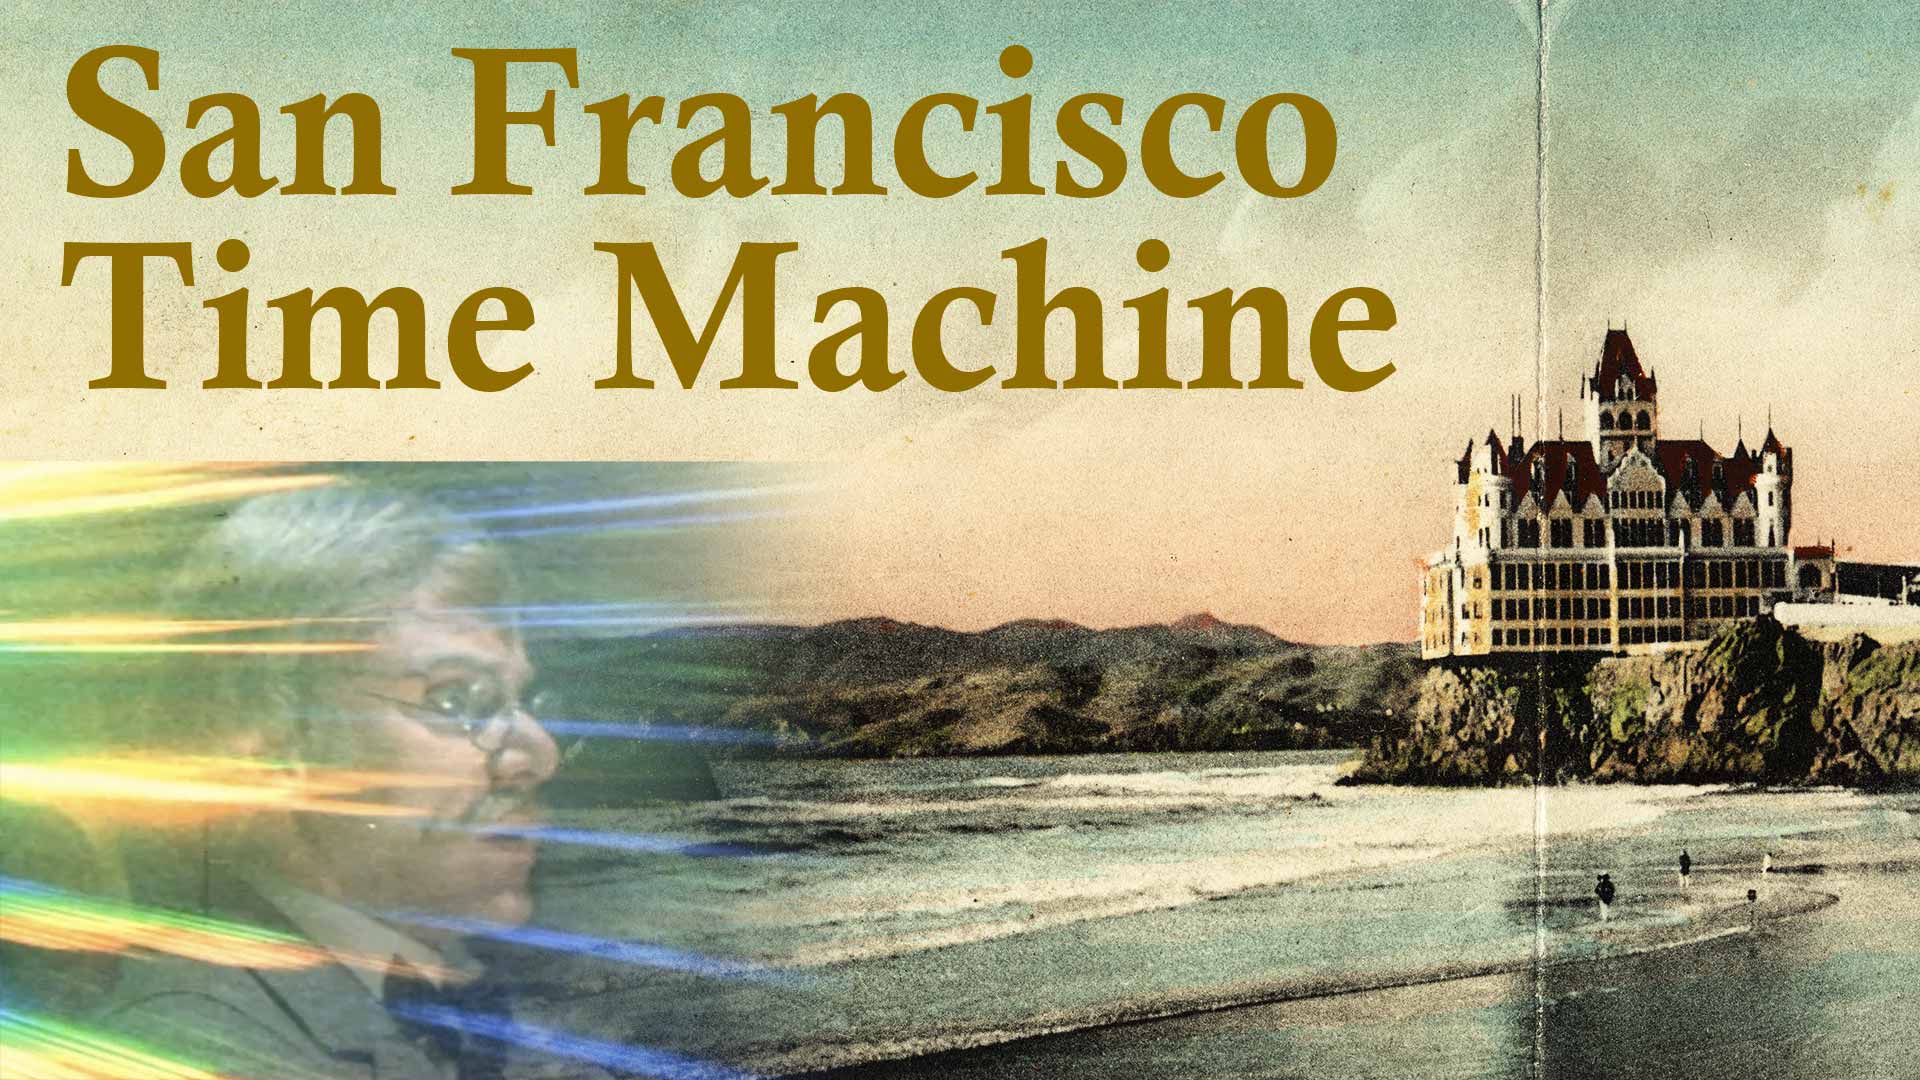 San Francisco Time Machine